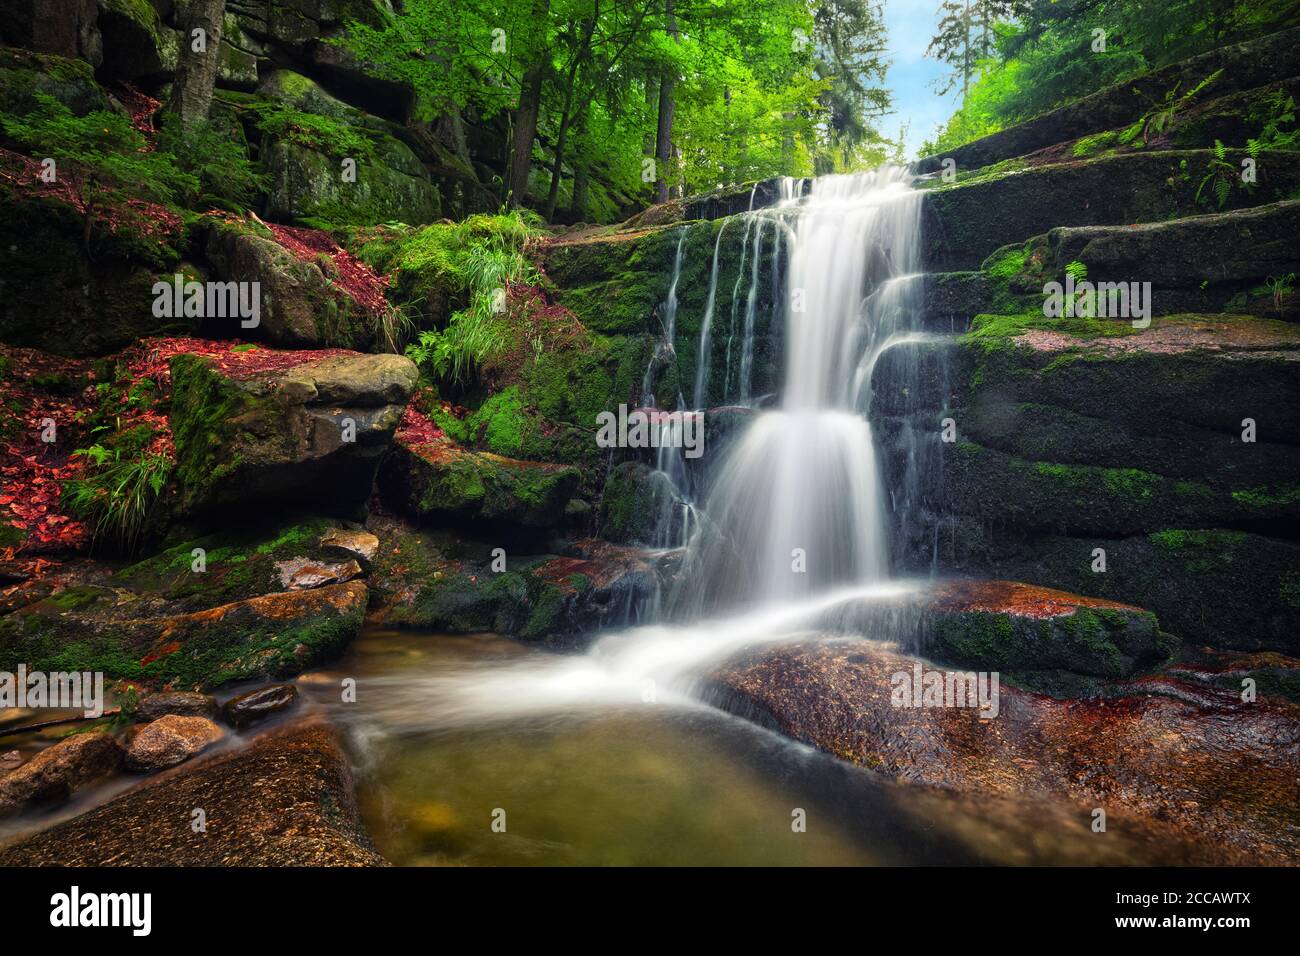 Kaskady Myi waterfall in Karkonosze National Park, Lower Silesia, Poland Stock Photo